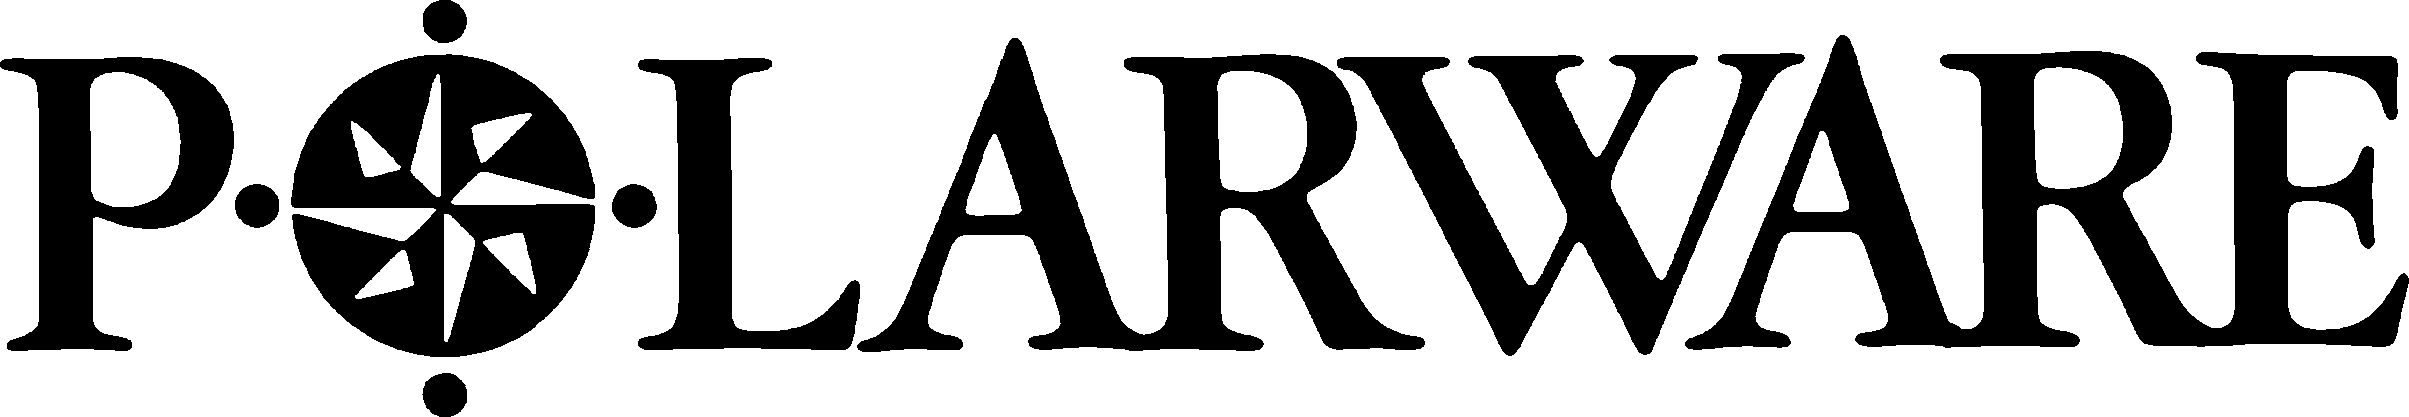 Polarware - Logo.png